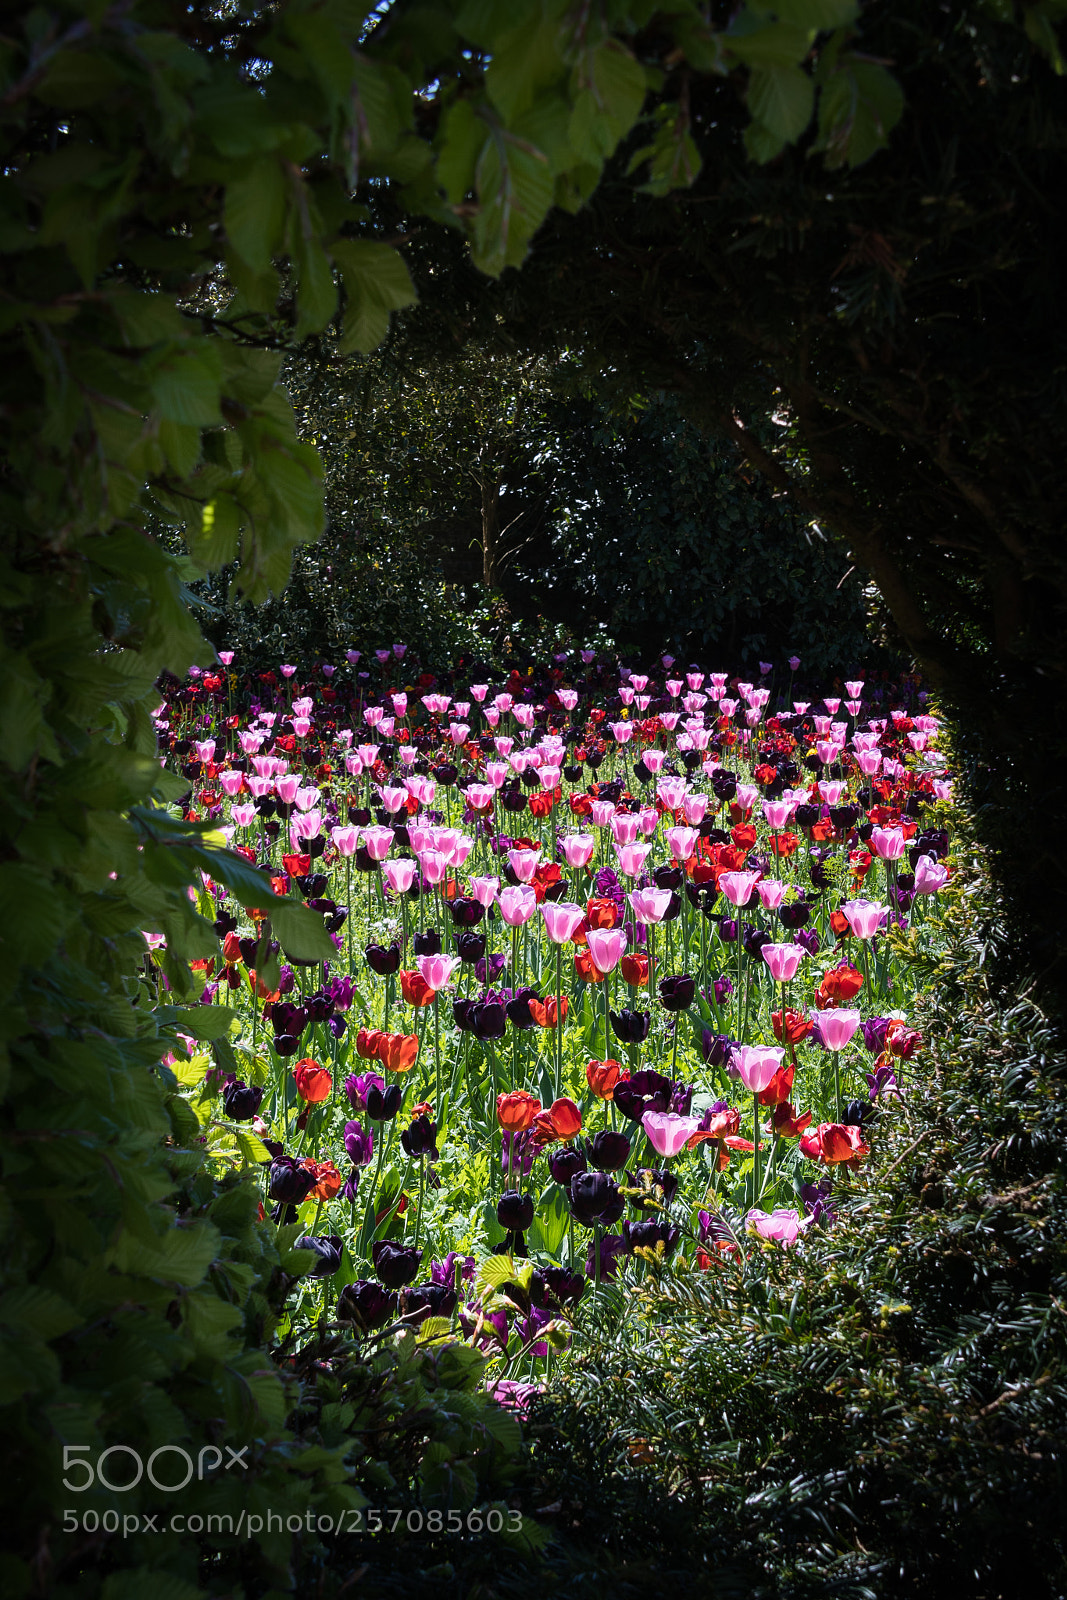 Nikon D500 sample photo. Arundel castle flower garden photography